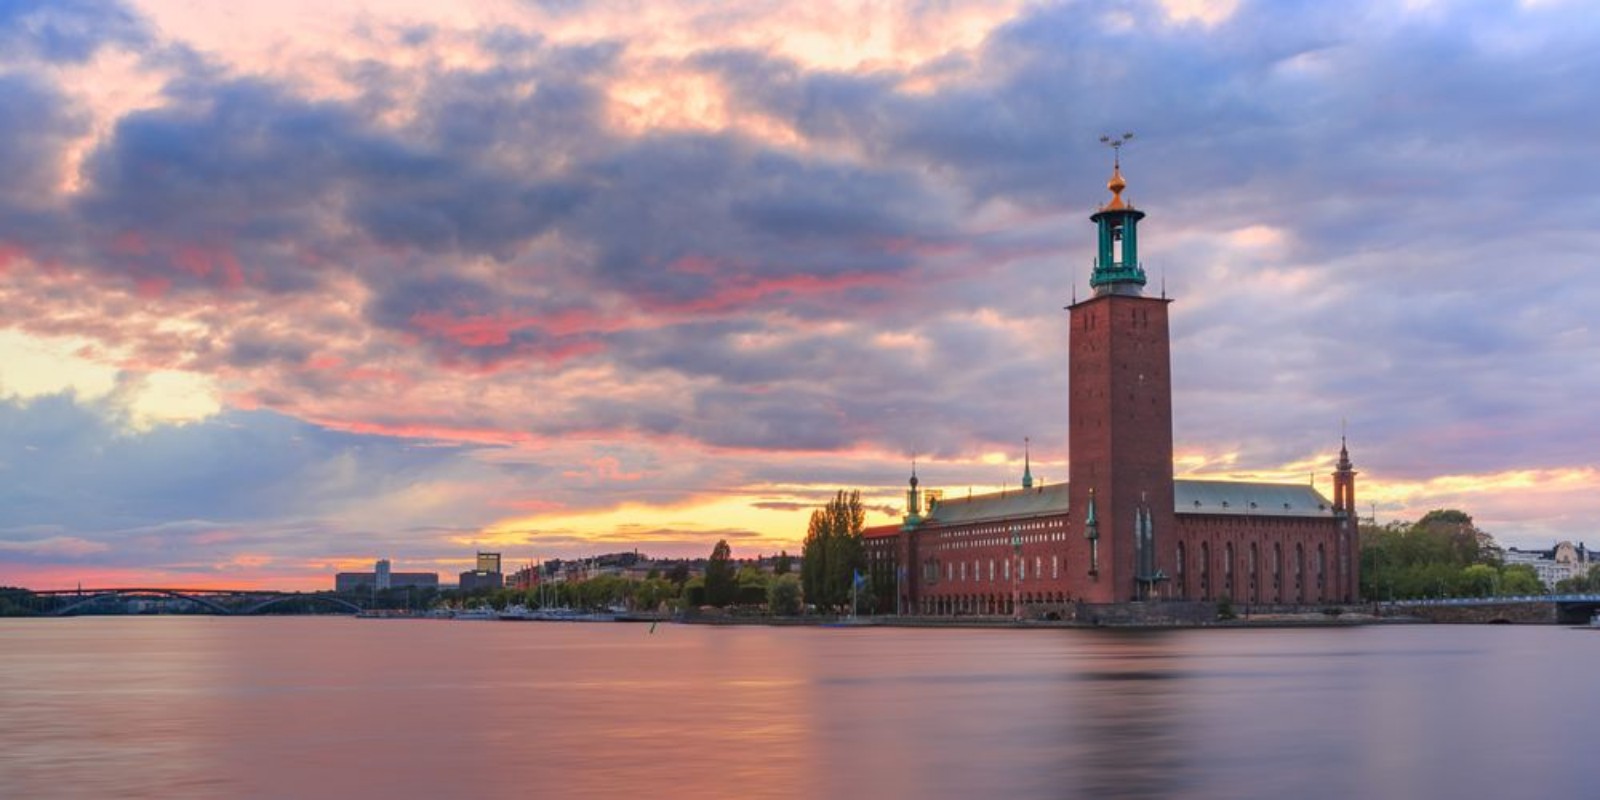 Image de City Hall at sunset Stockholm Sweden